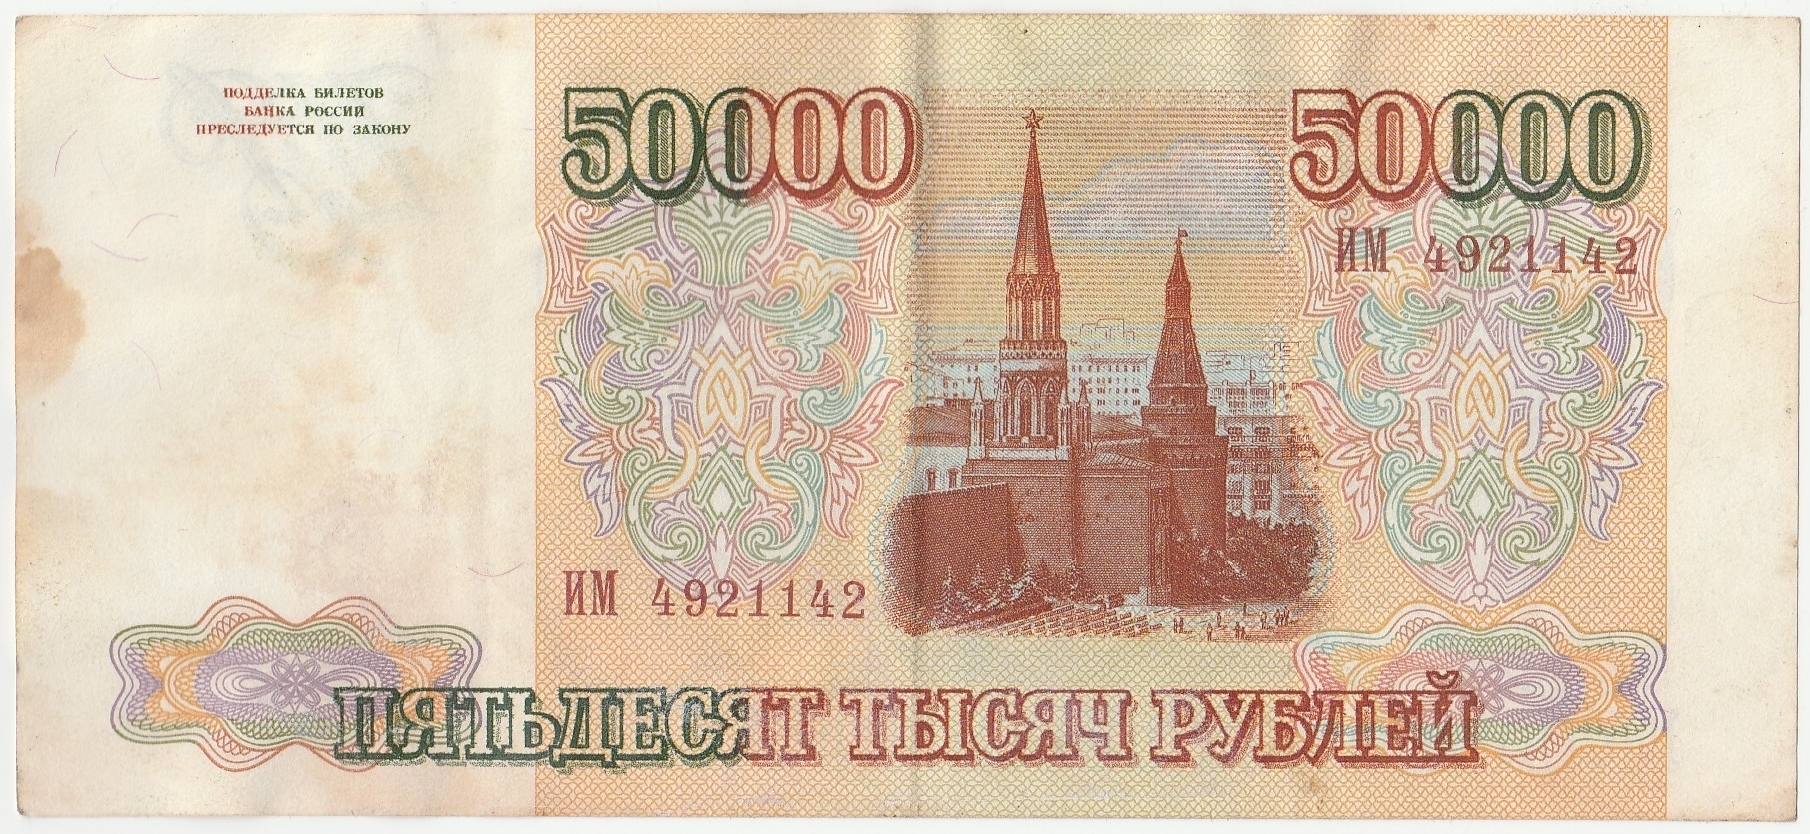 Купюра 50 000 рублей 1993 года